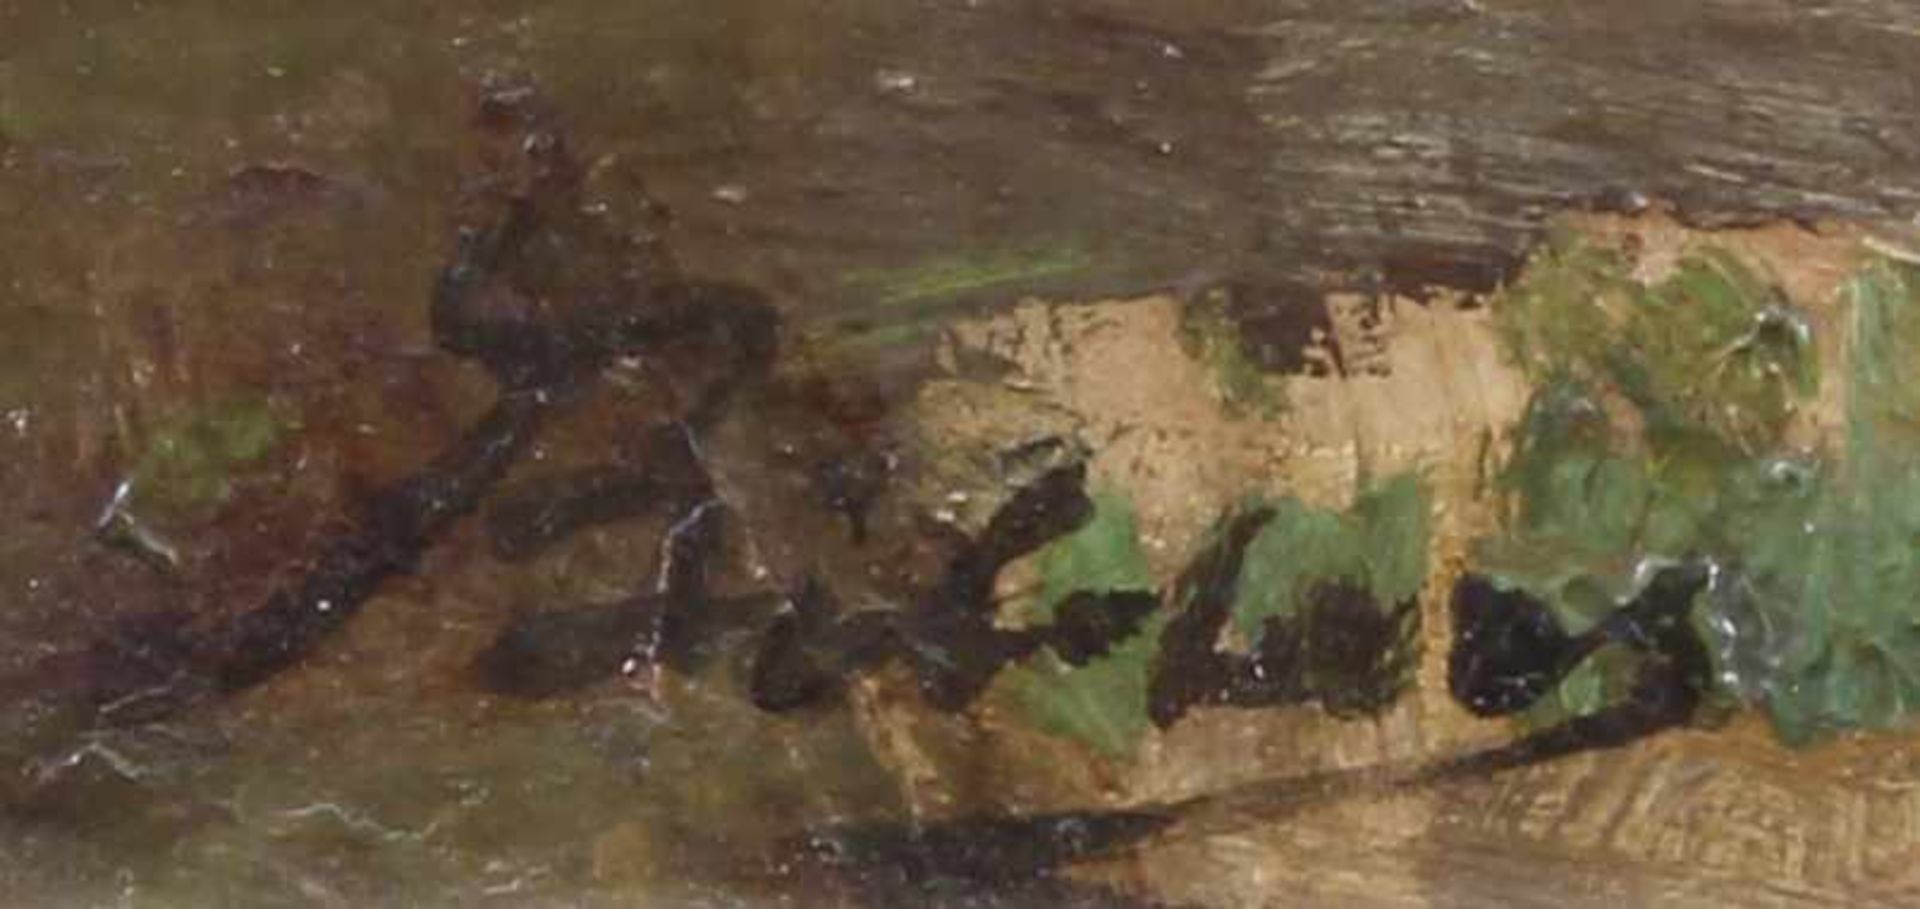 Bilders, Johannes Wernardus (1811 Utrecht - 1890 Oosterbeck, Landschaftsmaler), "Hinter dem - Image 3 of 4